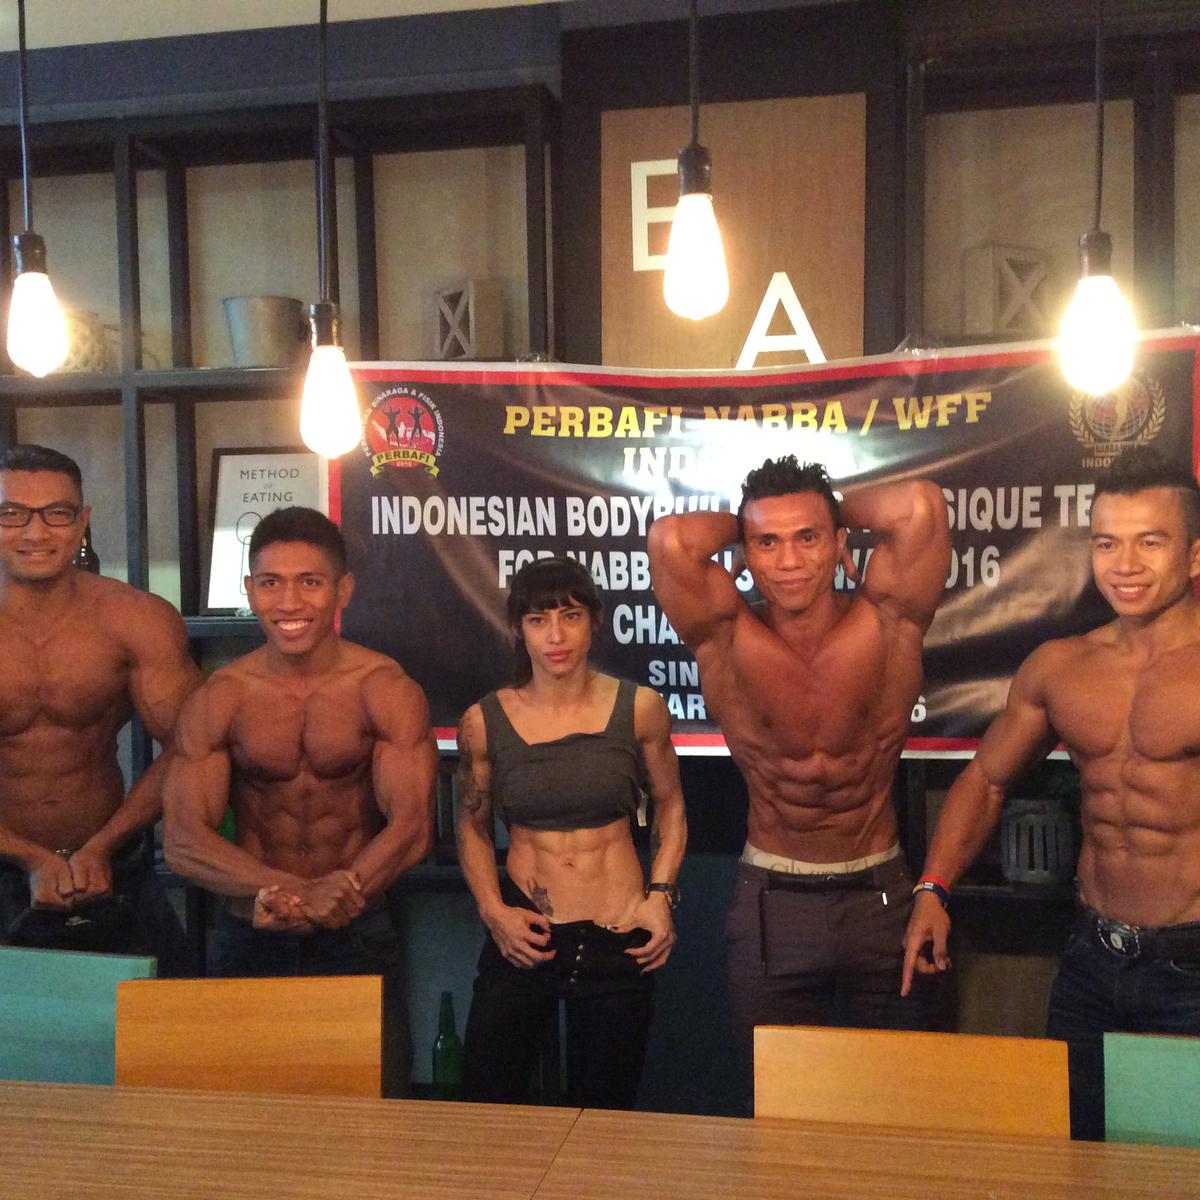 Berikut yang merupakan atlet binaraga indonesia yaitu